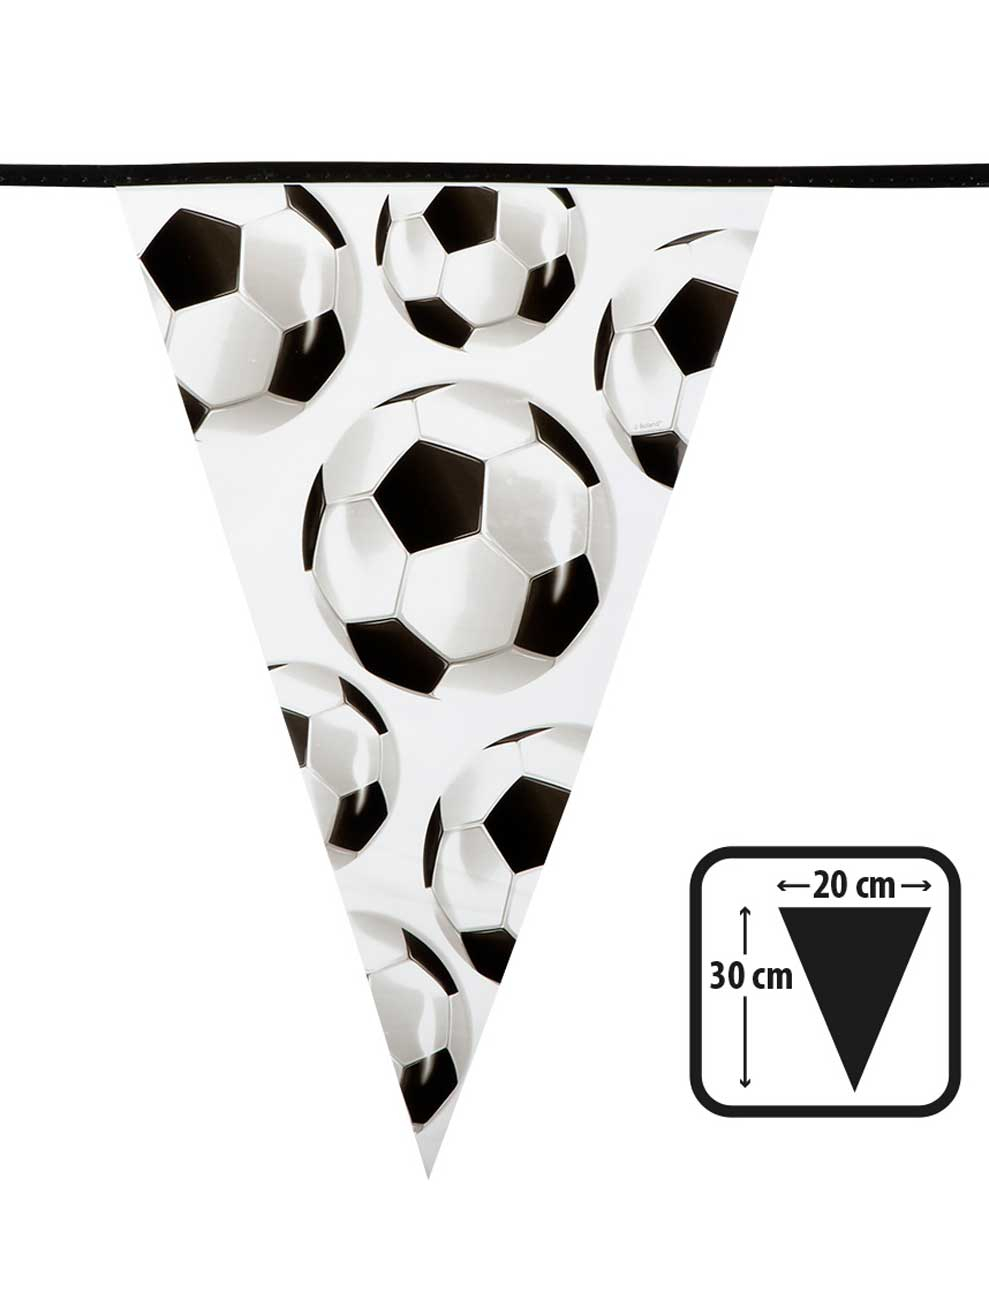 Wimpelkette Fußball 6 m schwarz/weiß